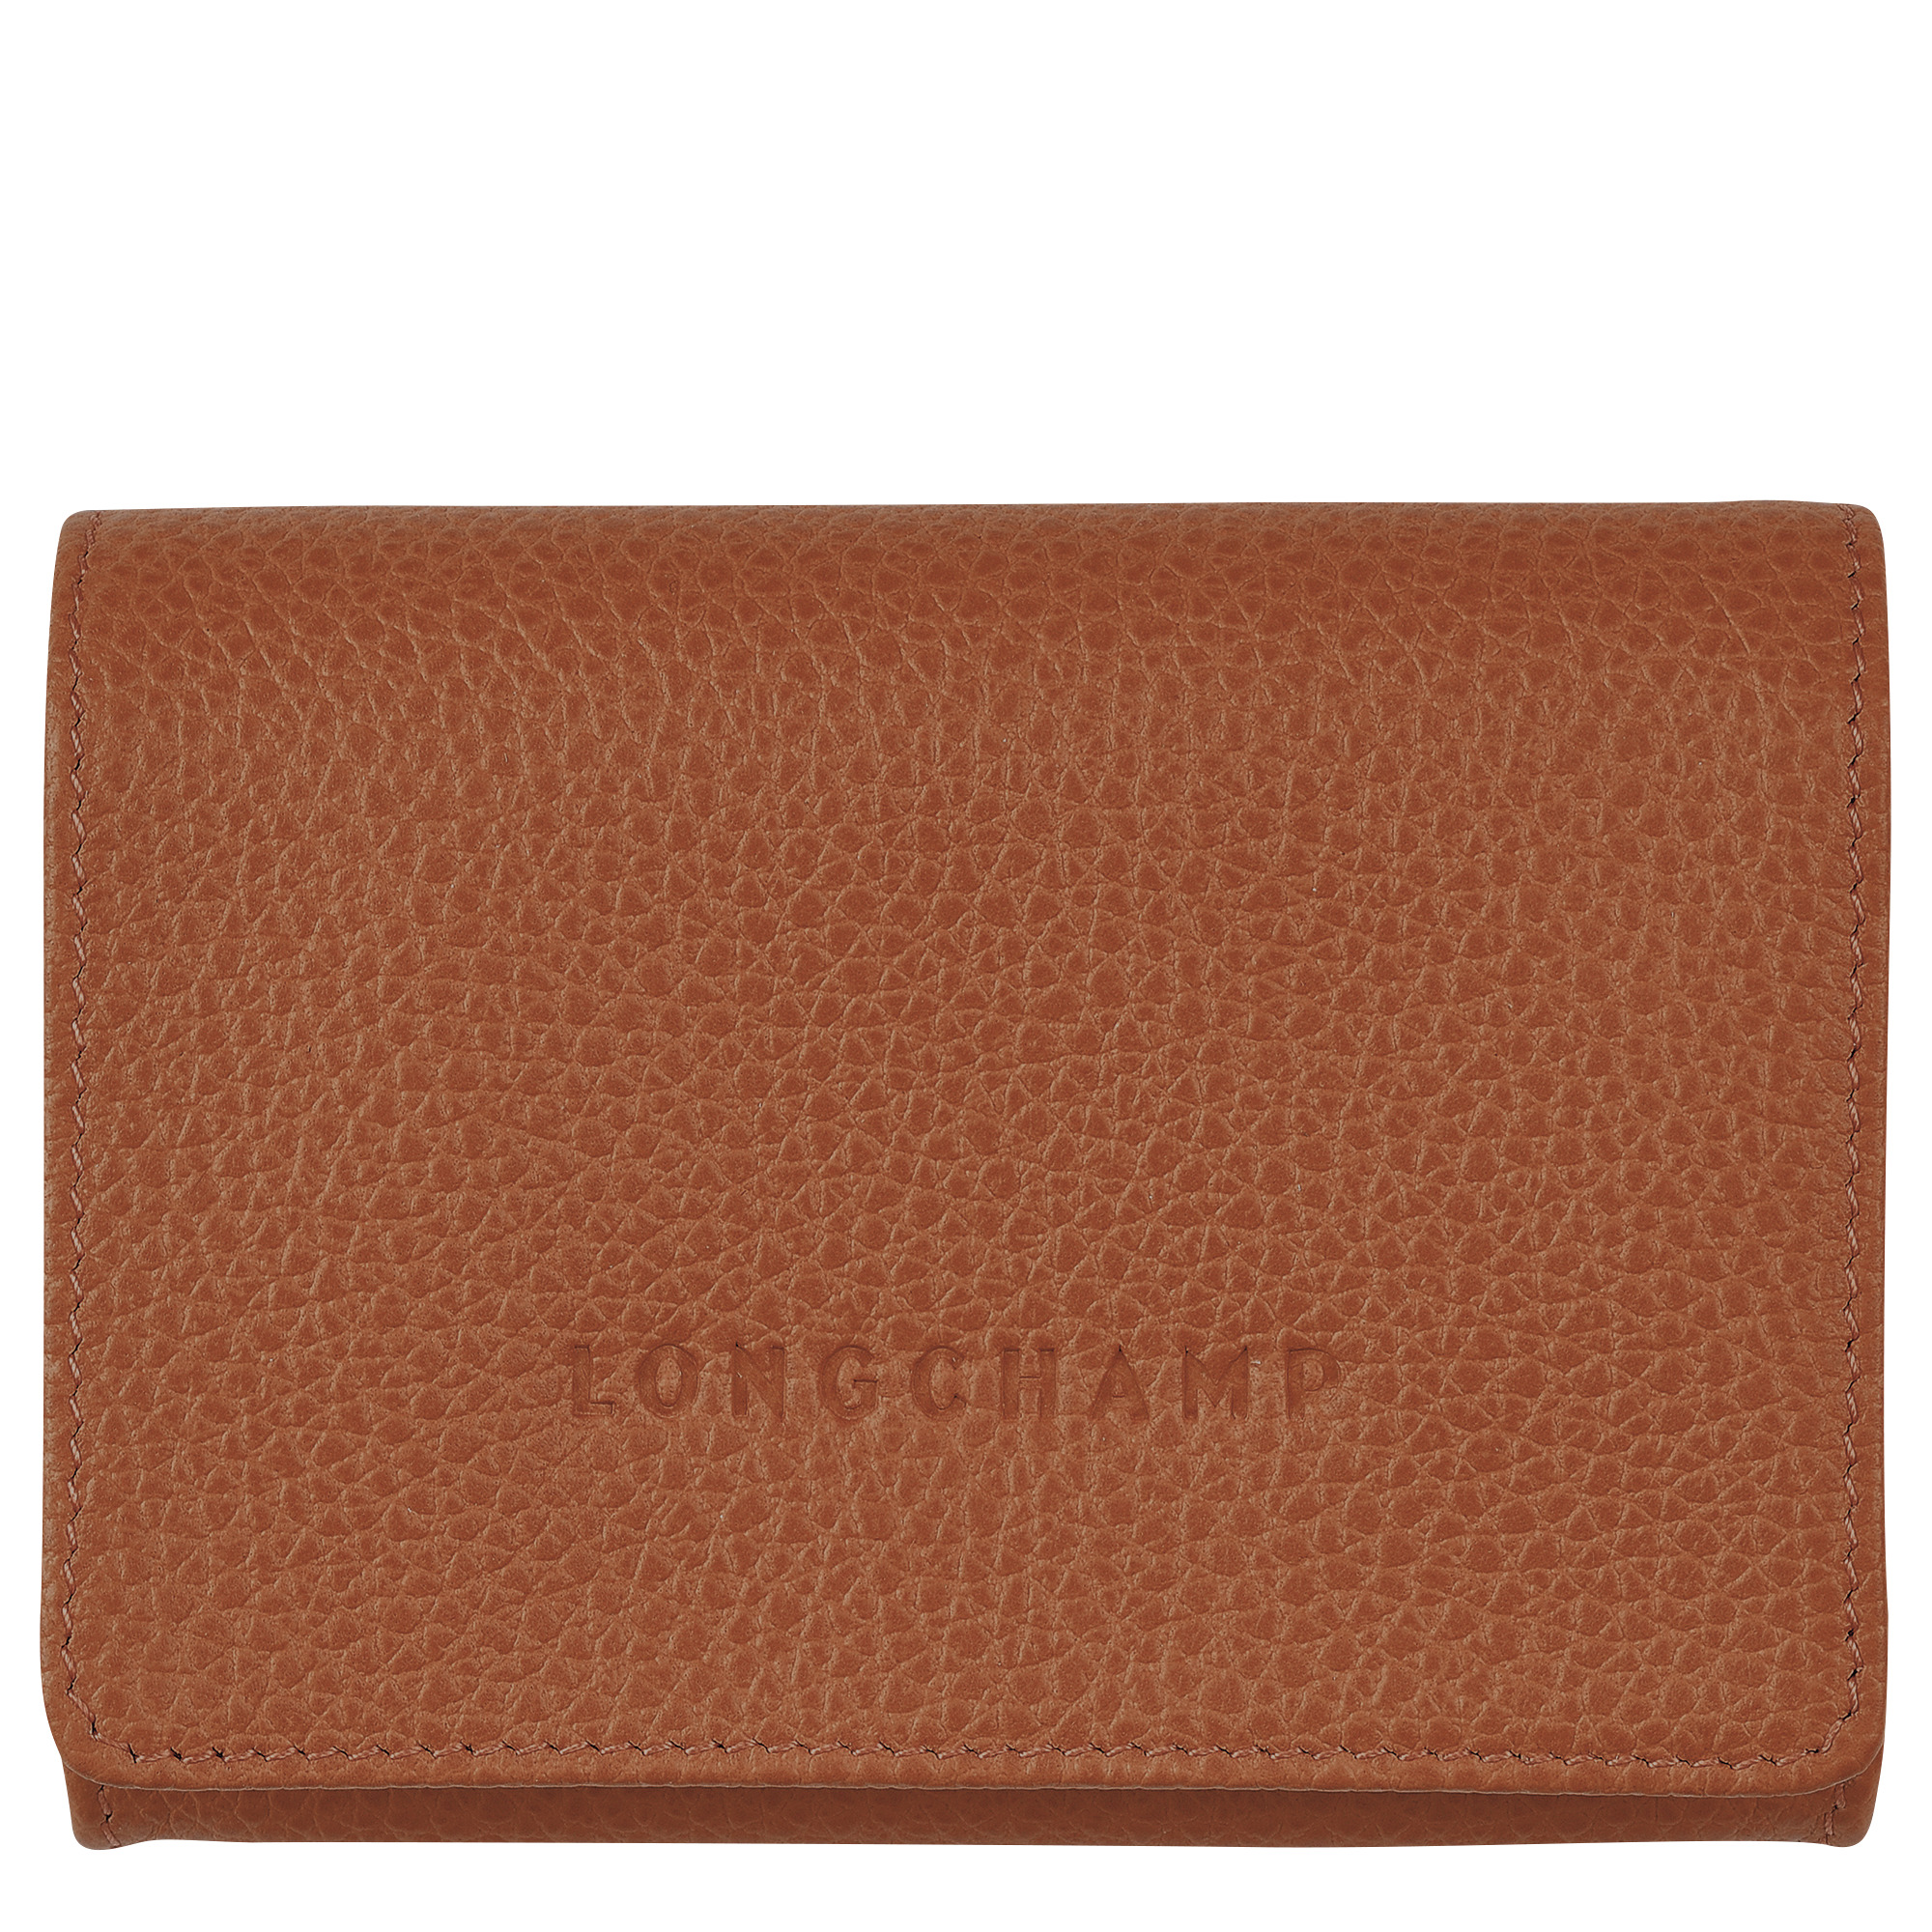 Le Foulonné Coin purse Caramel - Leather - 1